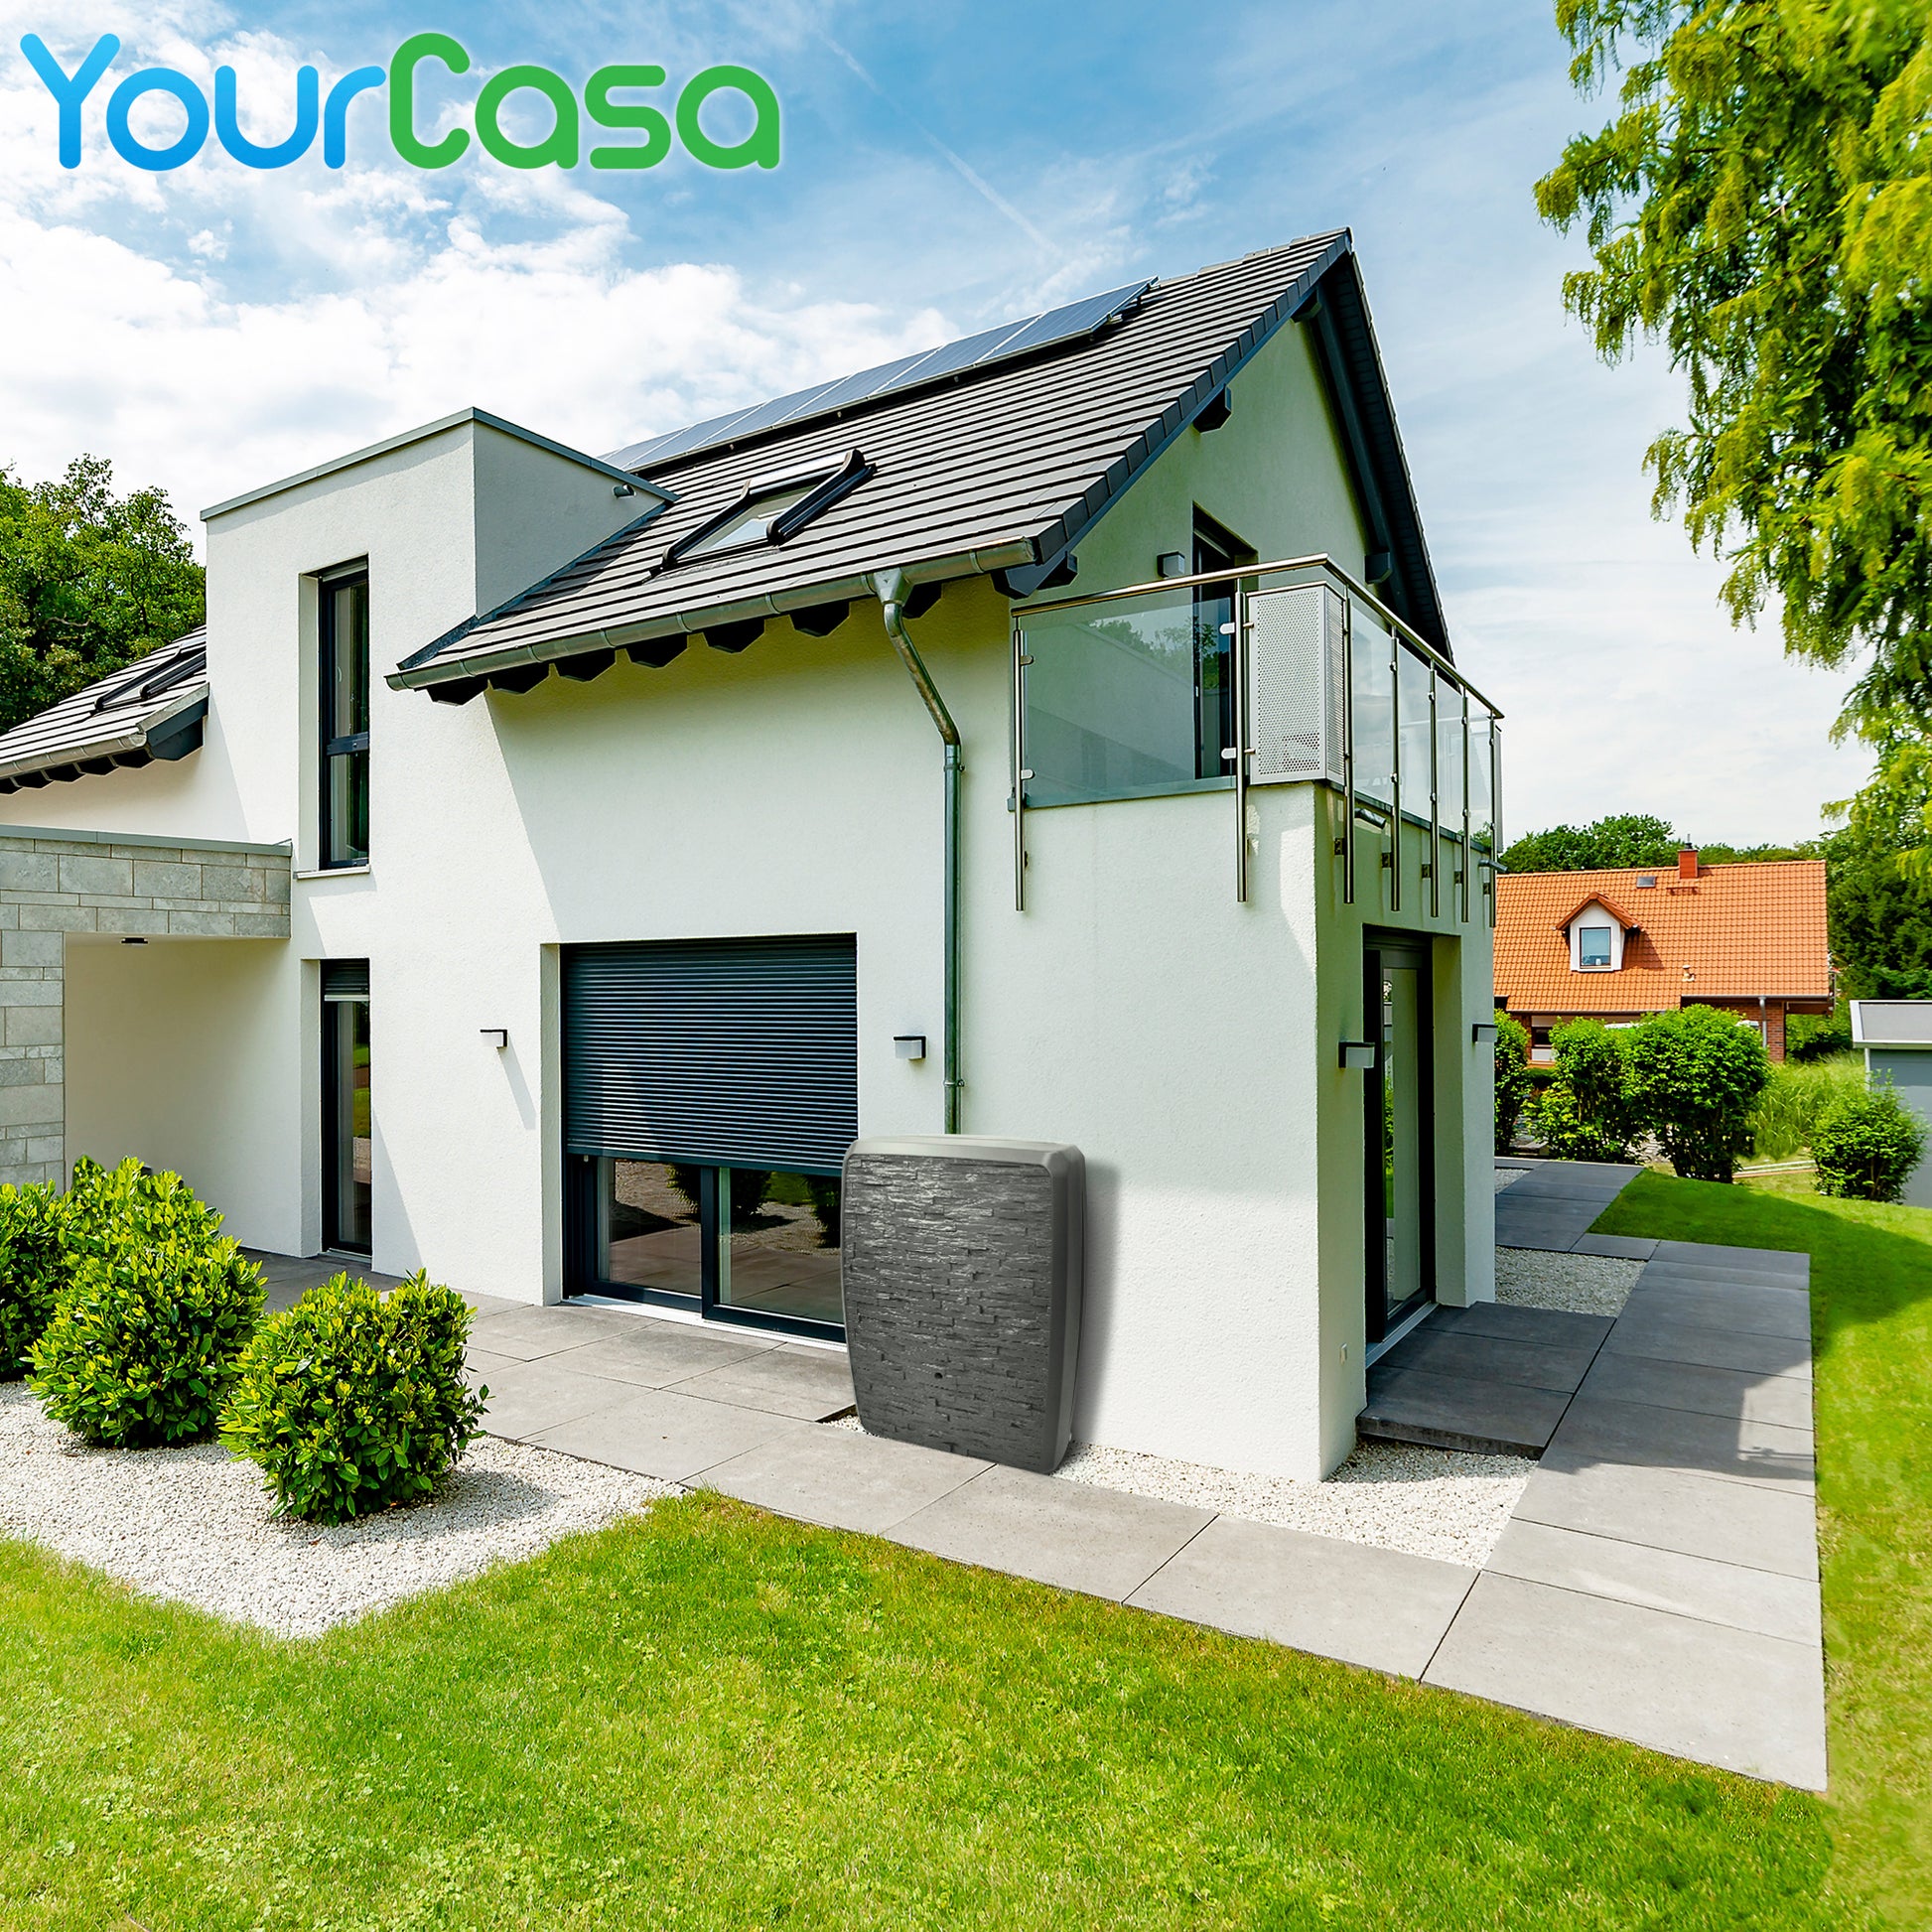 Ein Haus mit Solarpanel auf dem Dach und YourCasa Regentonne-Tanks zur Regenwassernutzung.